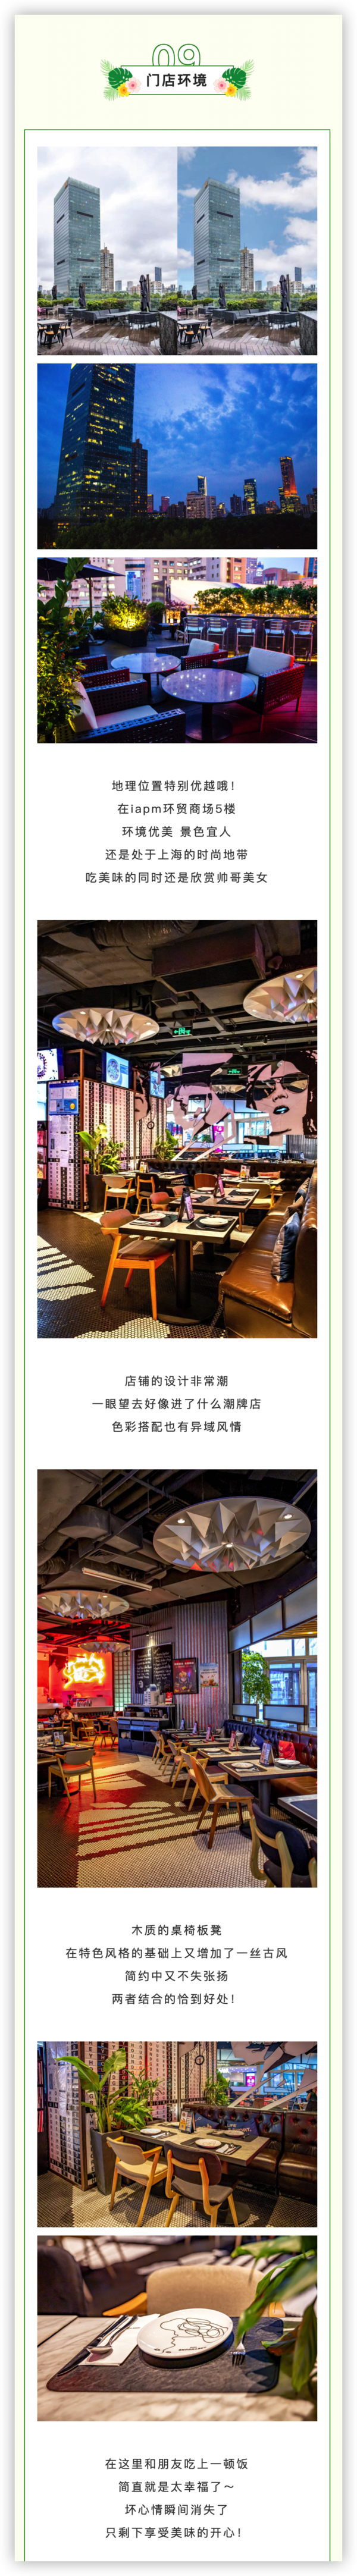 上海iapm店 灰狗·潮泰意·餐厅GREYHOUND 双人泰餐